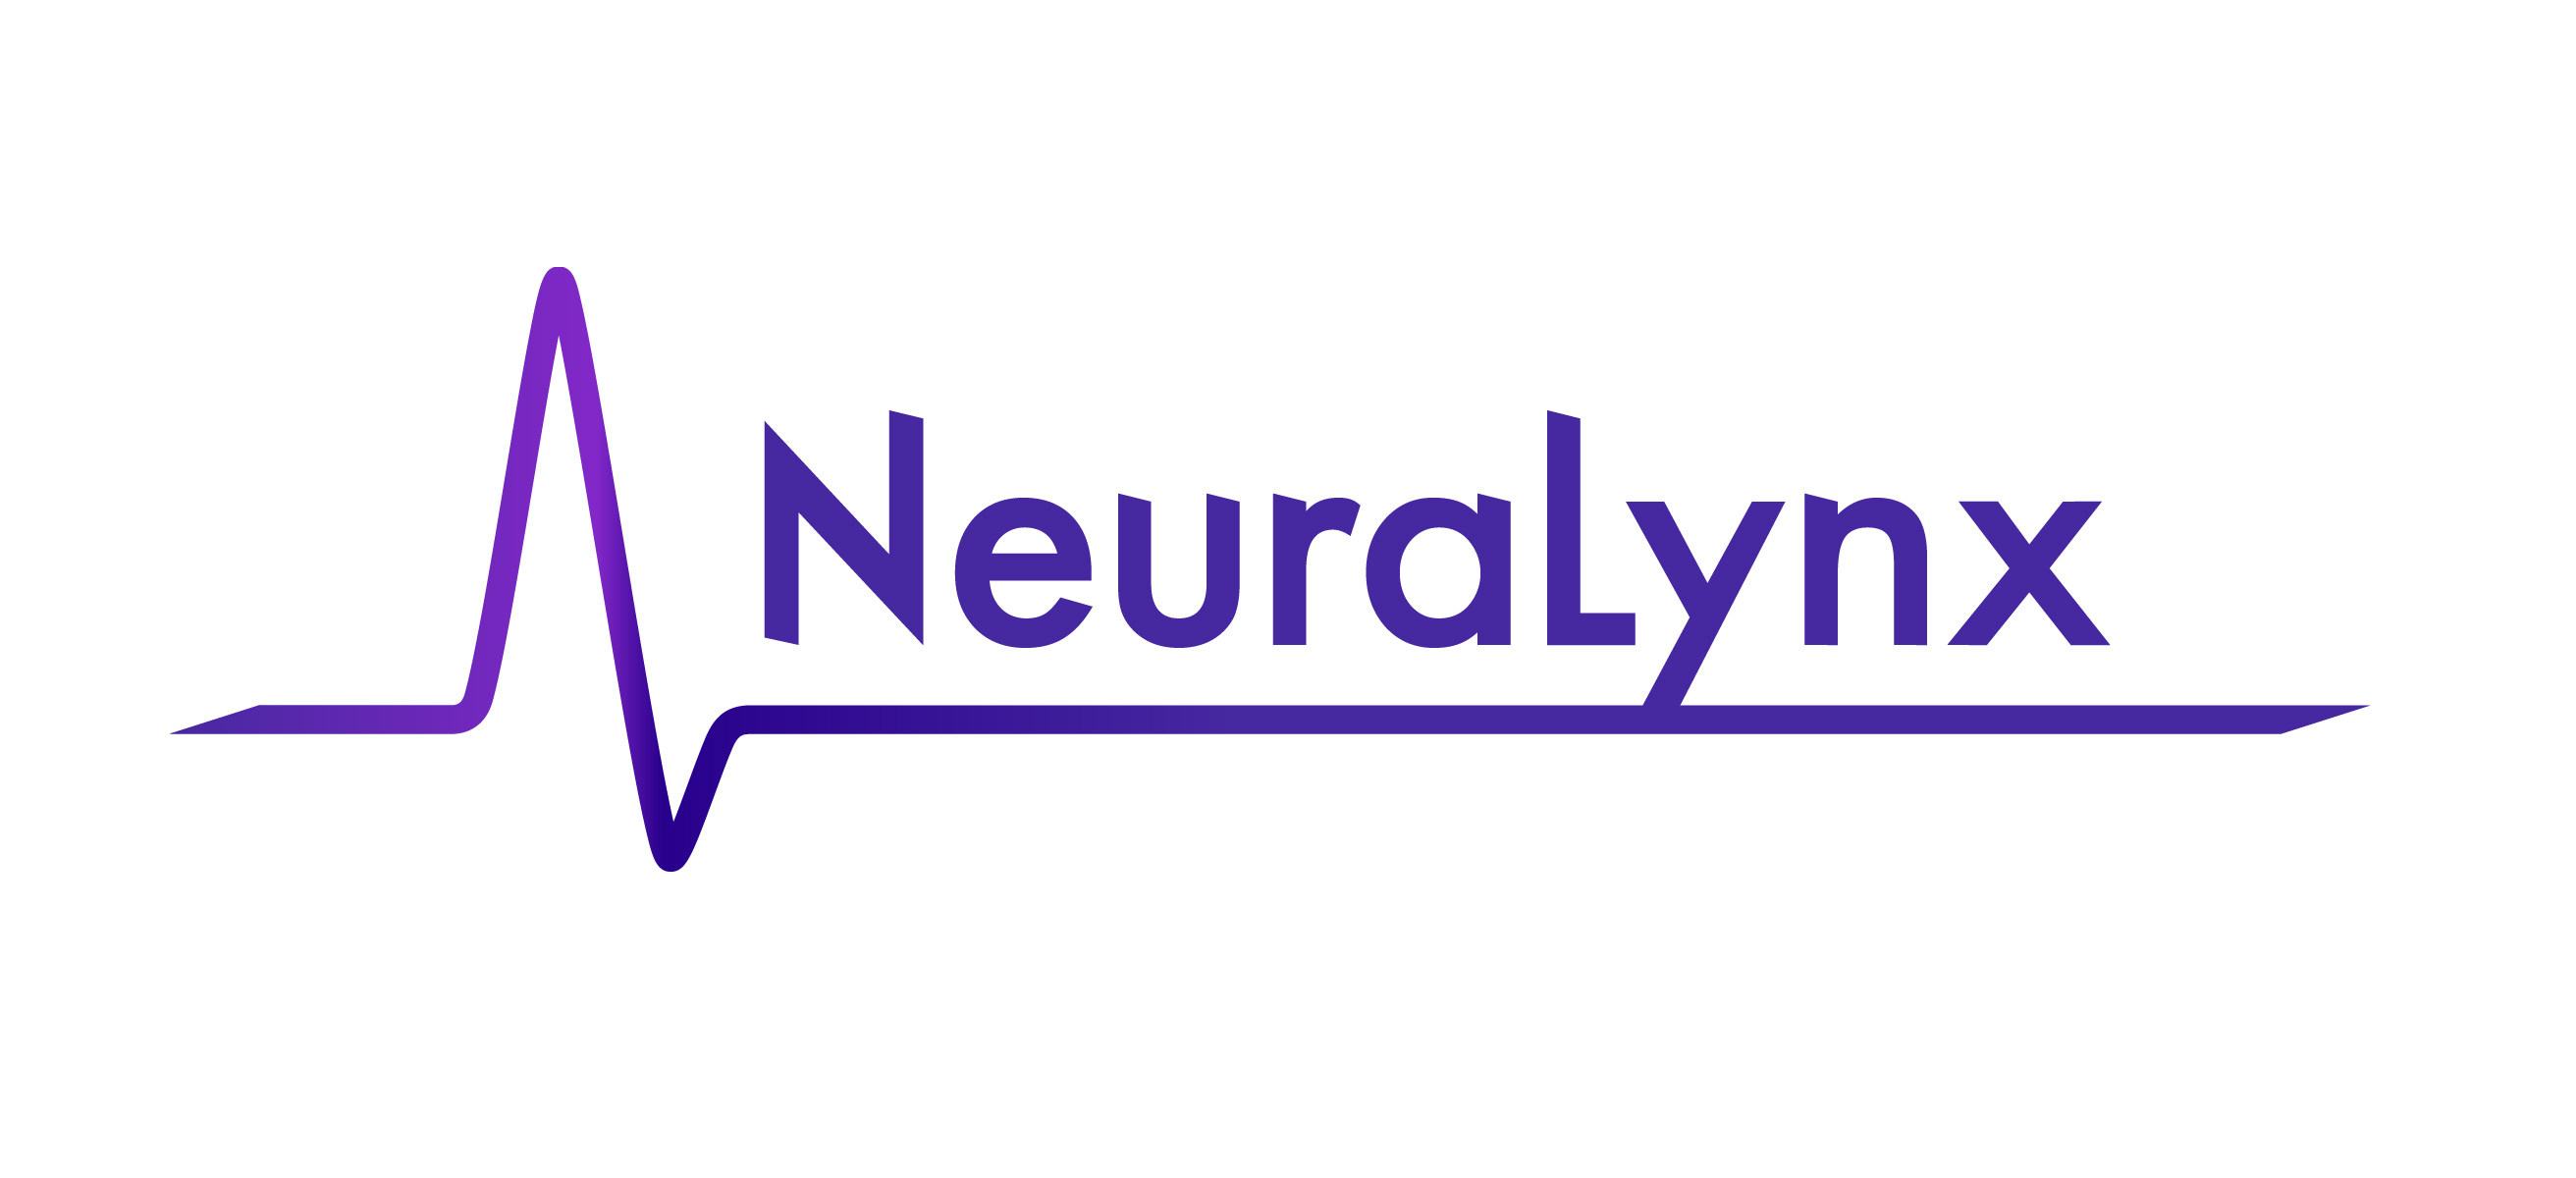 Neuralynx